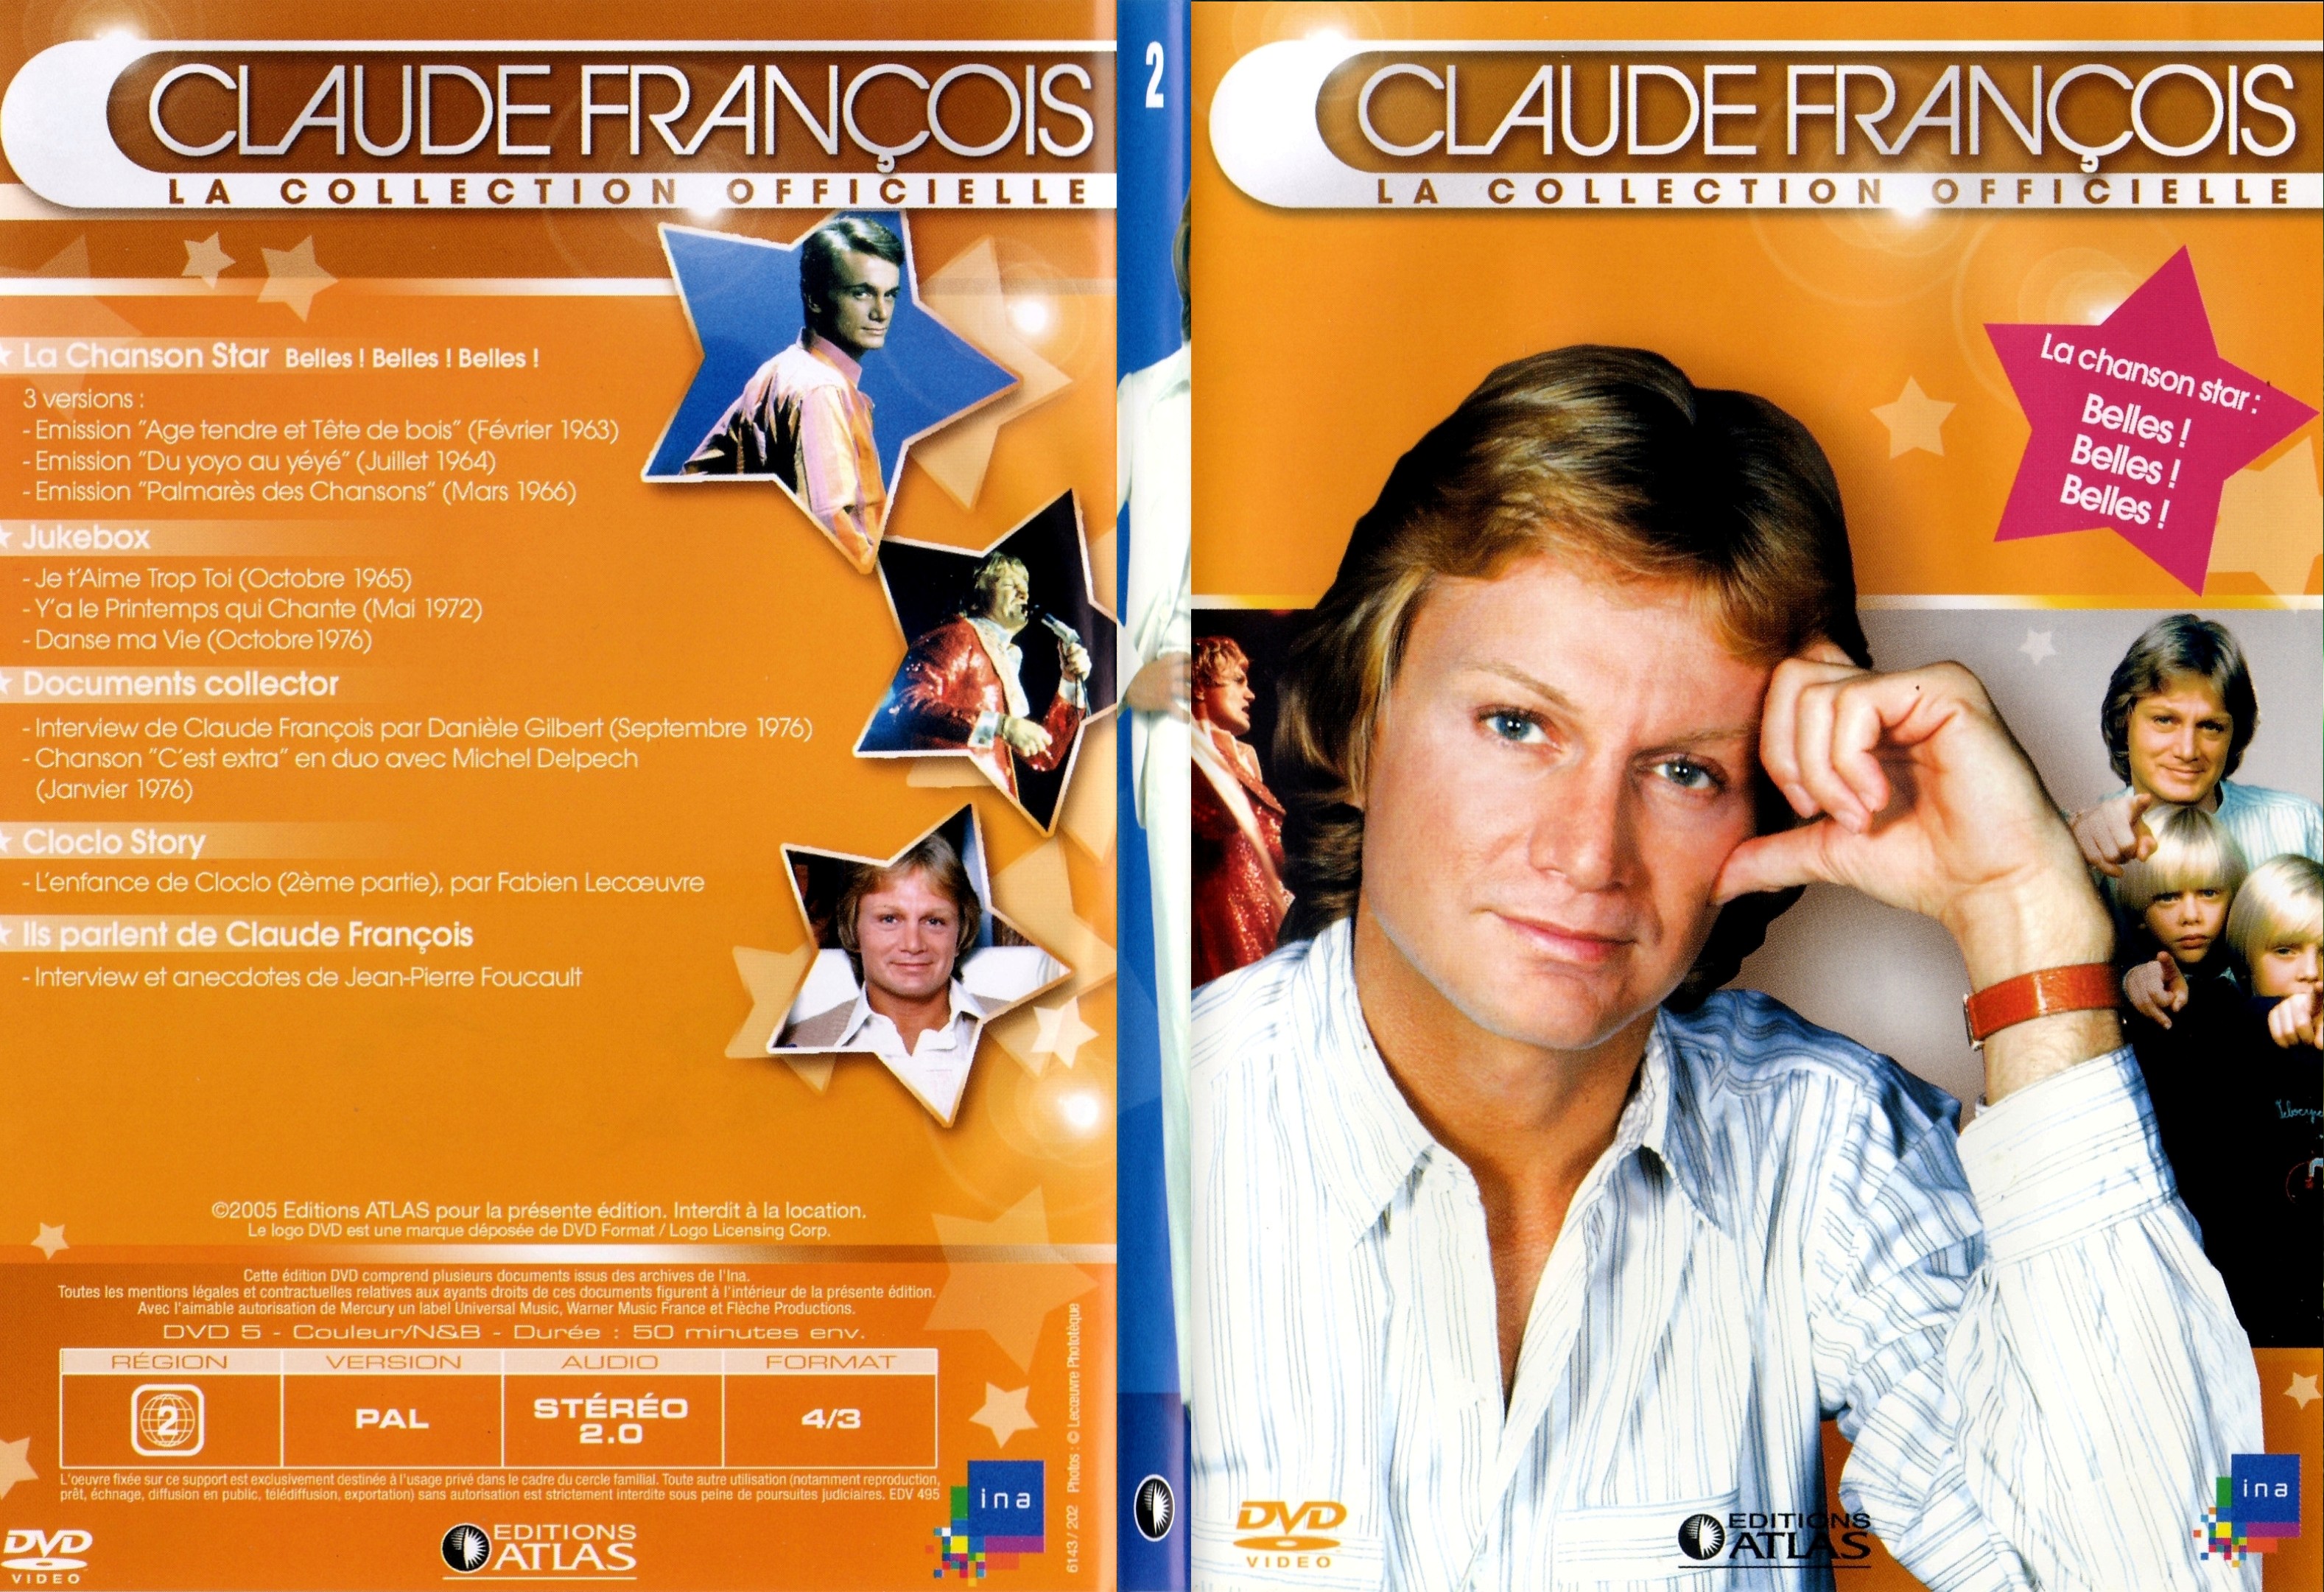 Jaquette DVD Claude francois le collection officielle vol 02 - SLIM